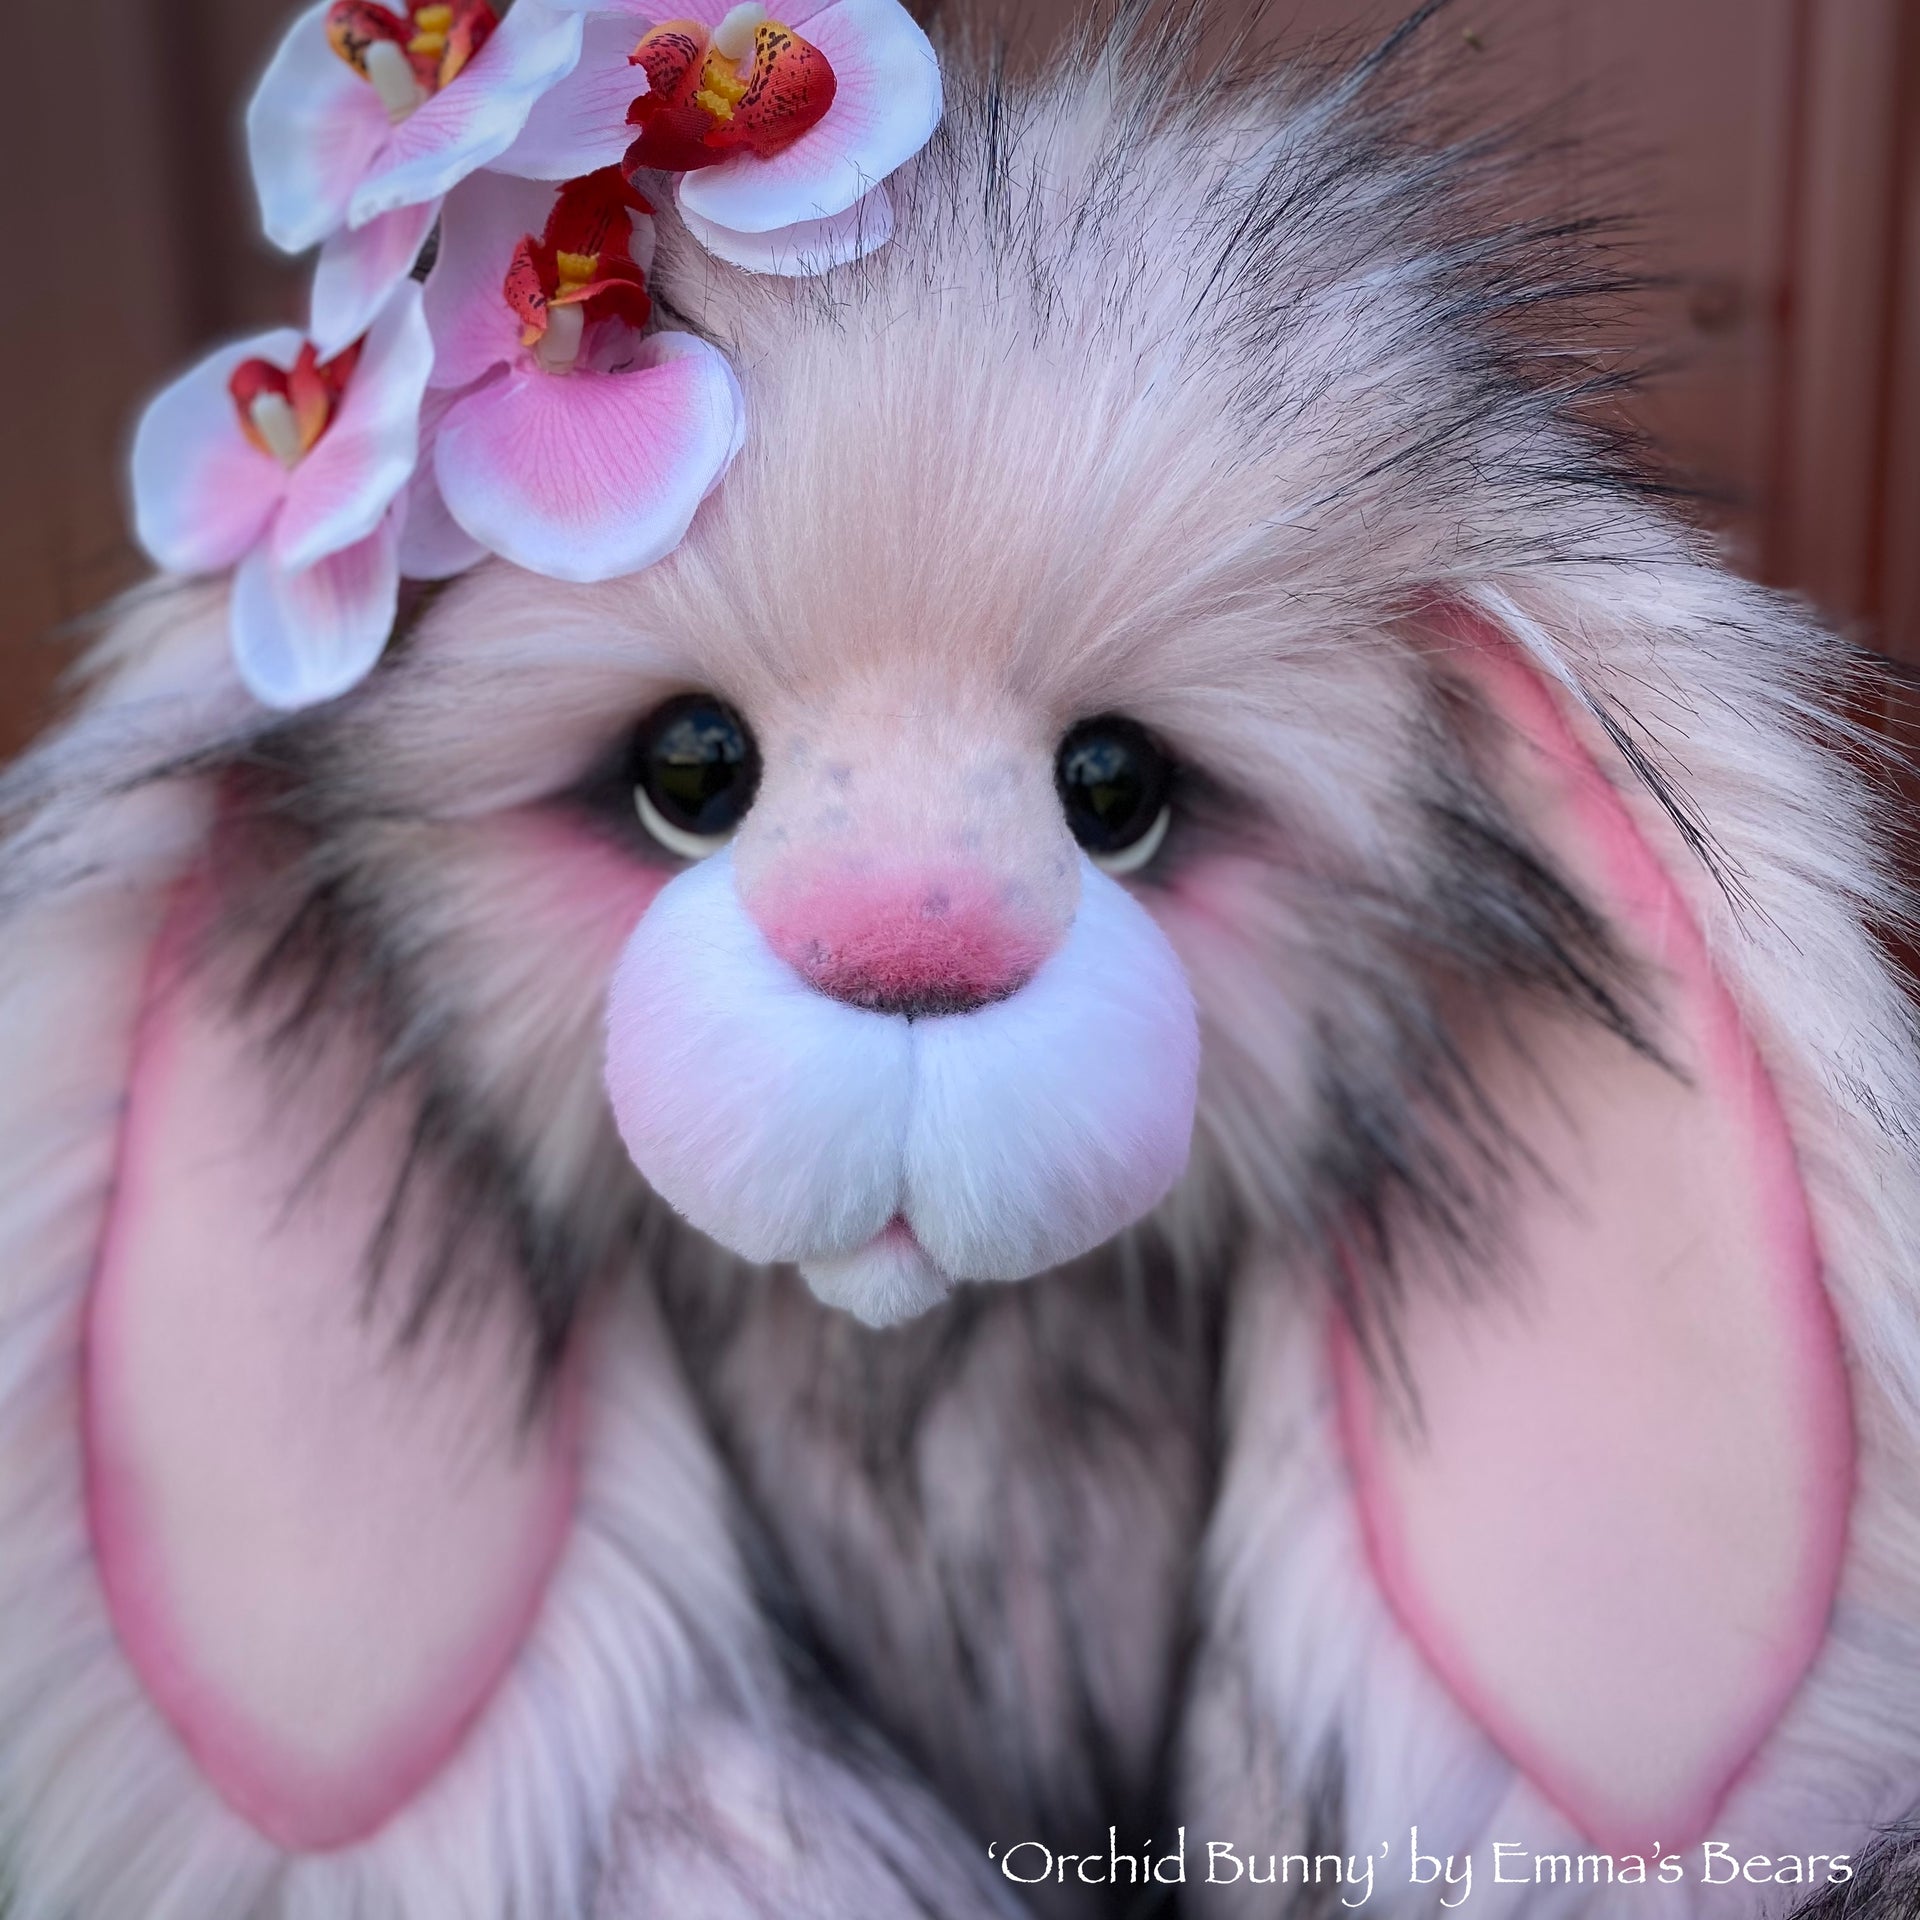 Orchid Bunny - 21" faux fur artist bunny by Emma's Bears - OOAK